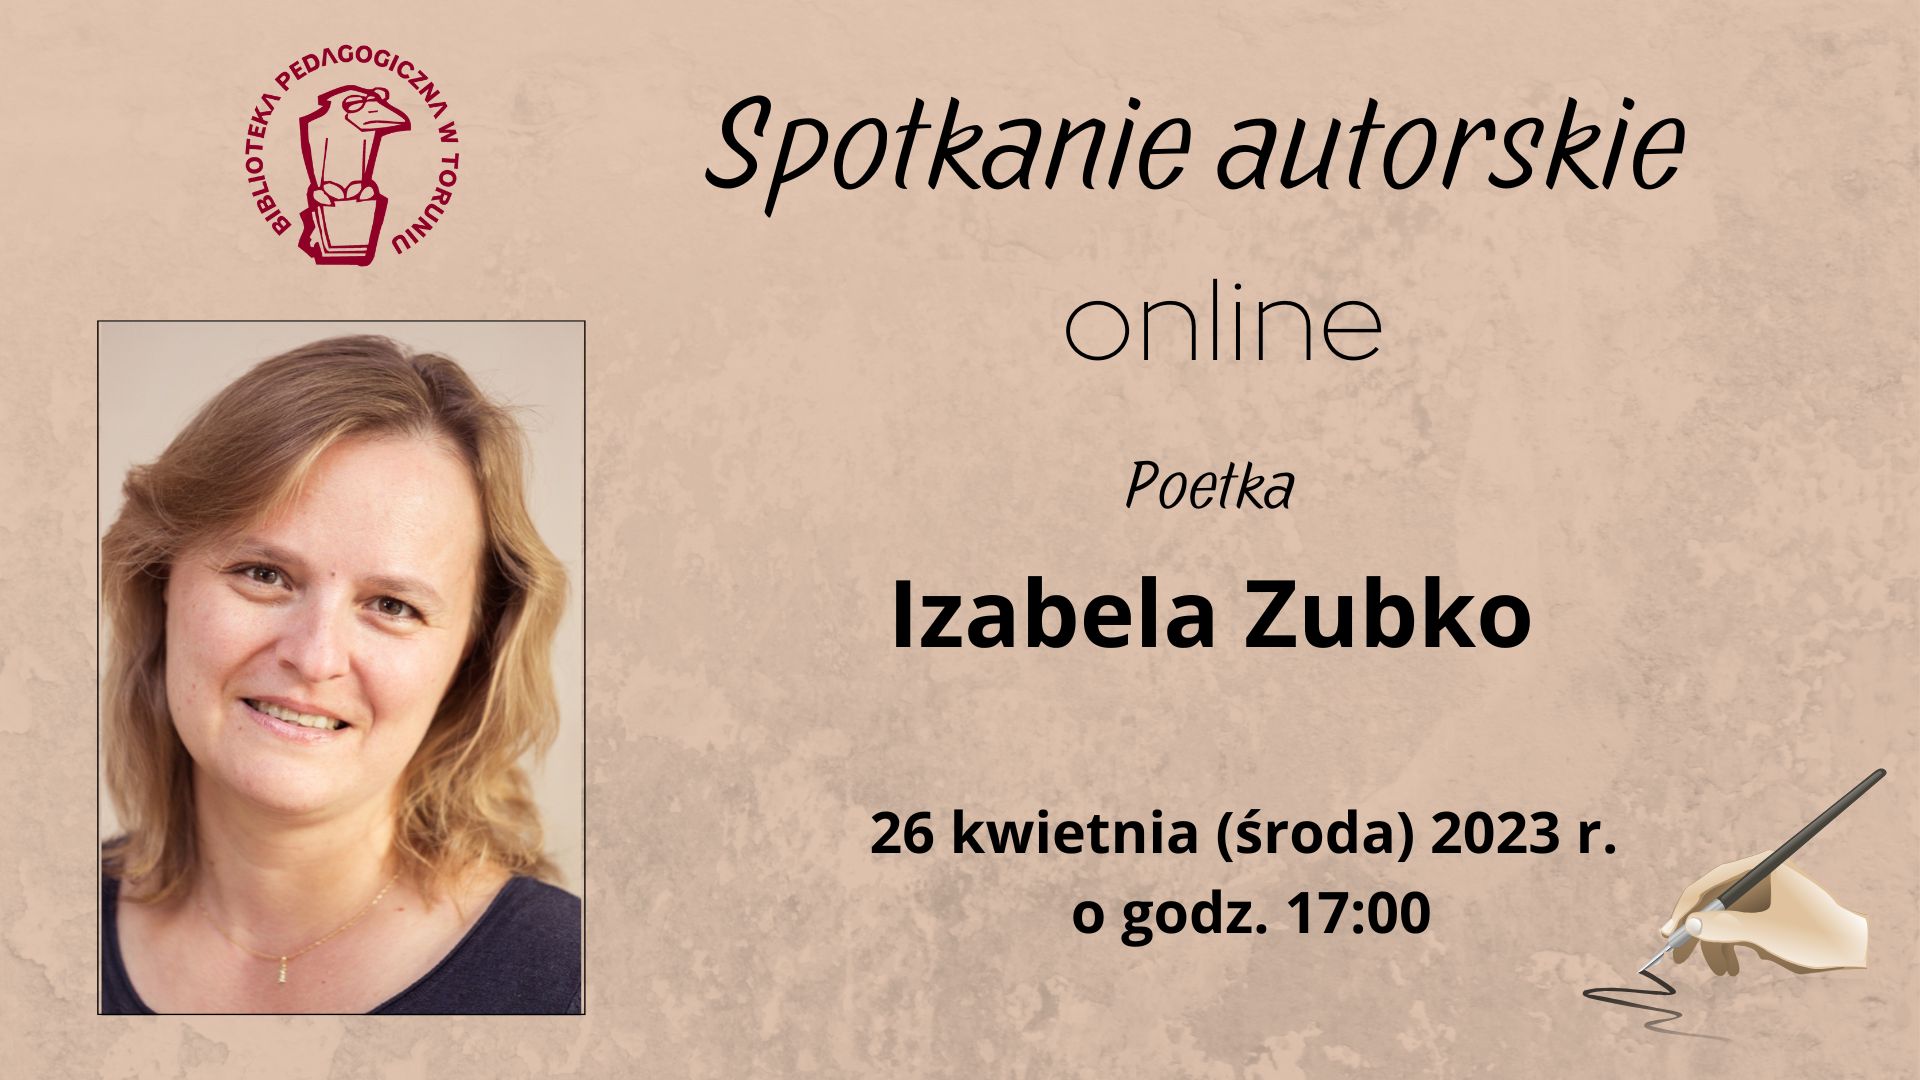 Zaproszenie na spotkanie autorskie online z poetkąIzabelą Zubko, które odbędzie się 26 kwietnia 2023 r. o godzinie 17:00.